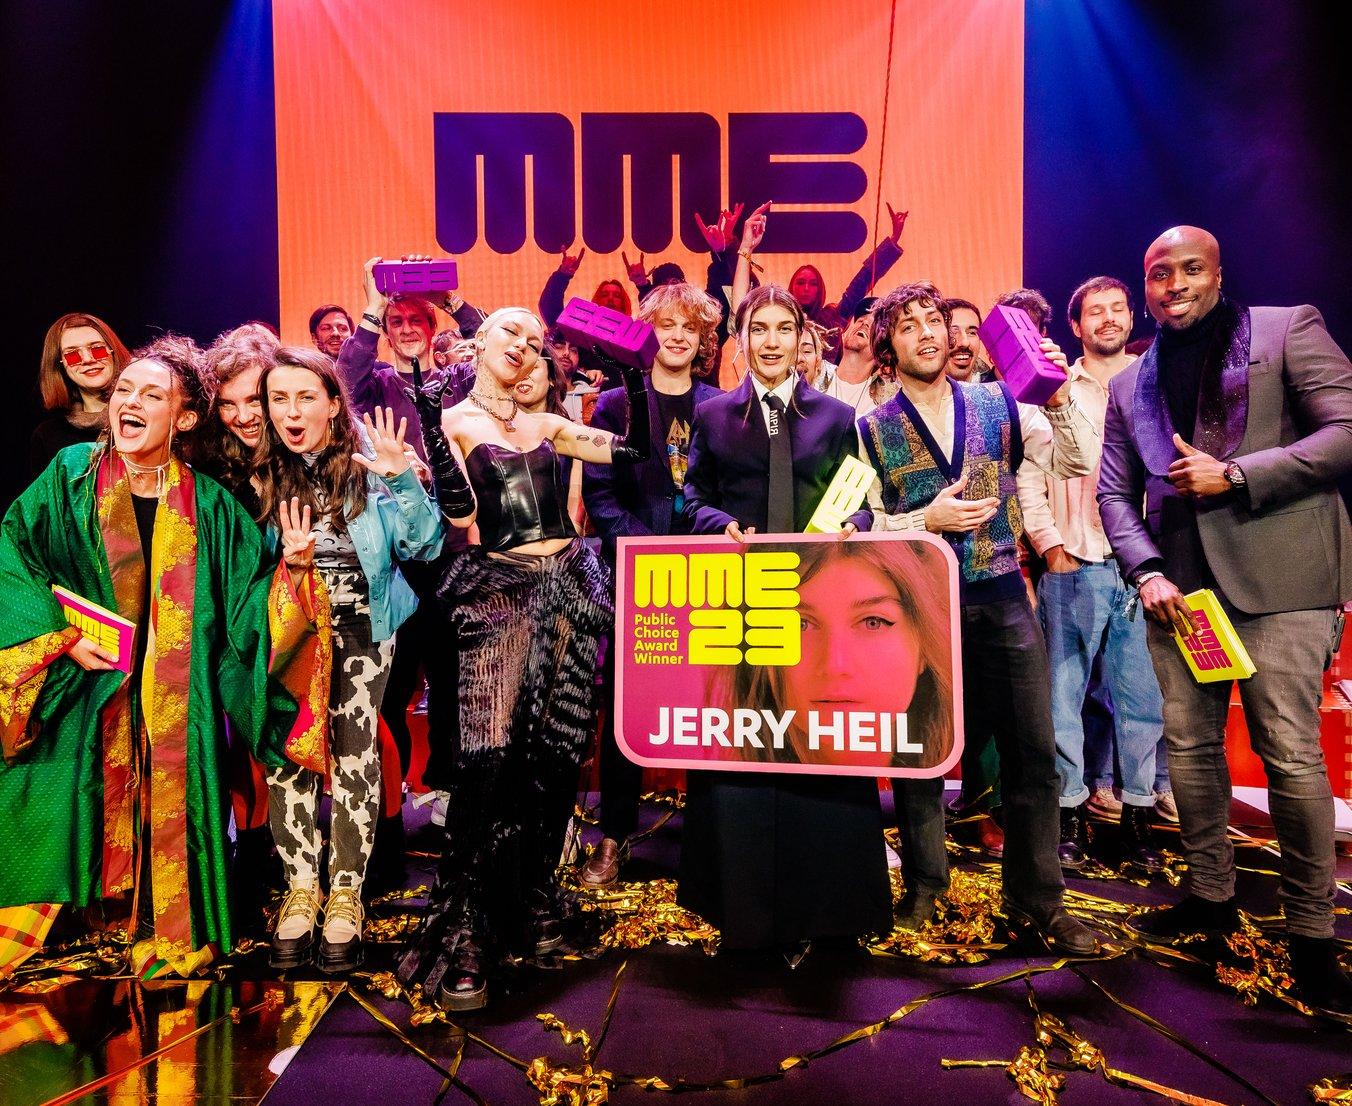 Jerry Heil won the European Union MME Awards 2023